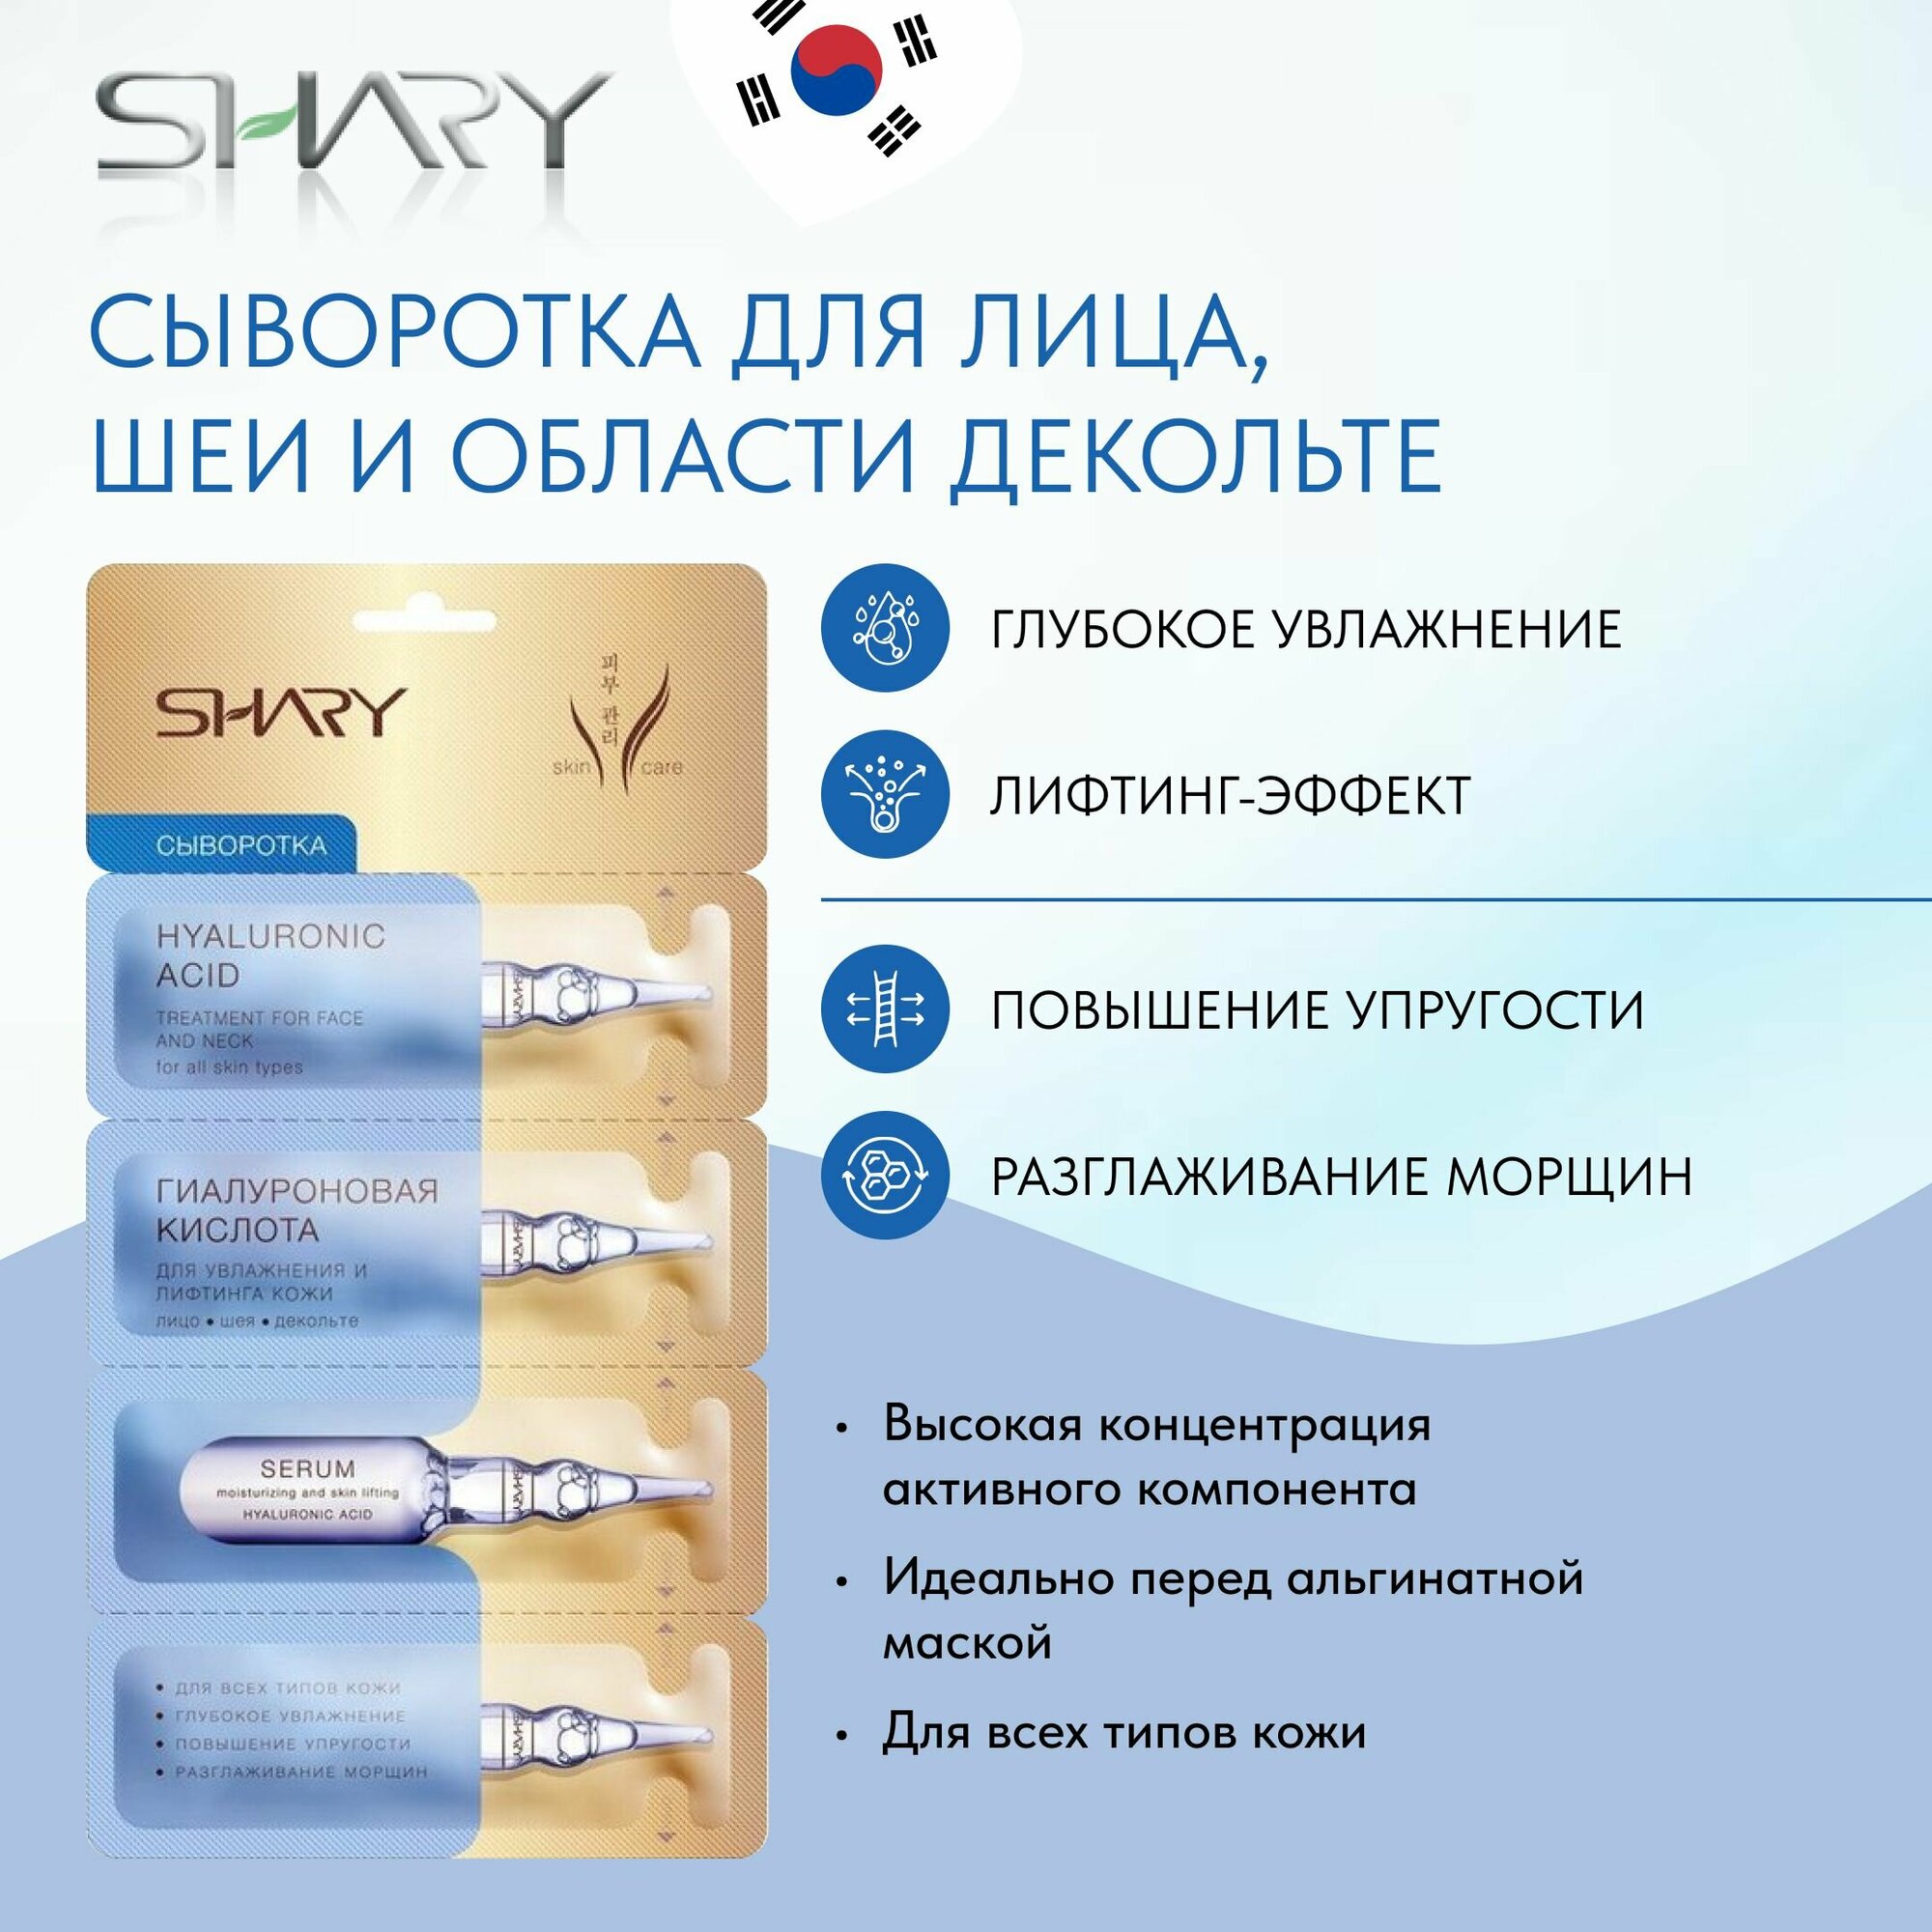 Гиалуроновая кислота SHARY, Сыворотка для лифтинга и для увлажнения кожи, 2 шт х 8 г